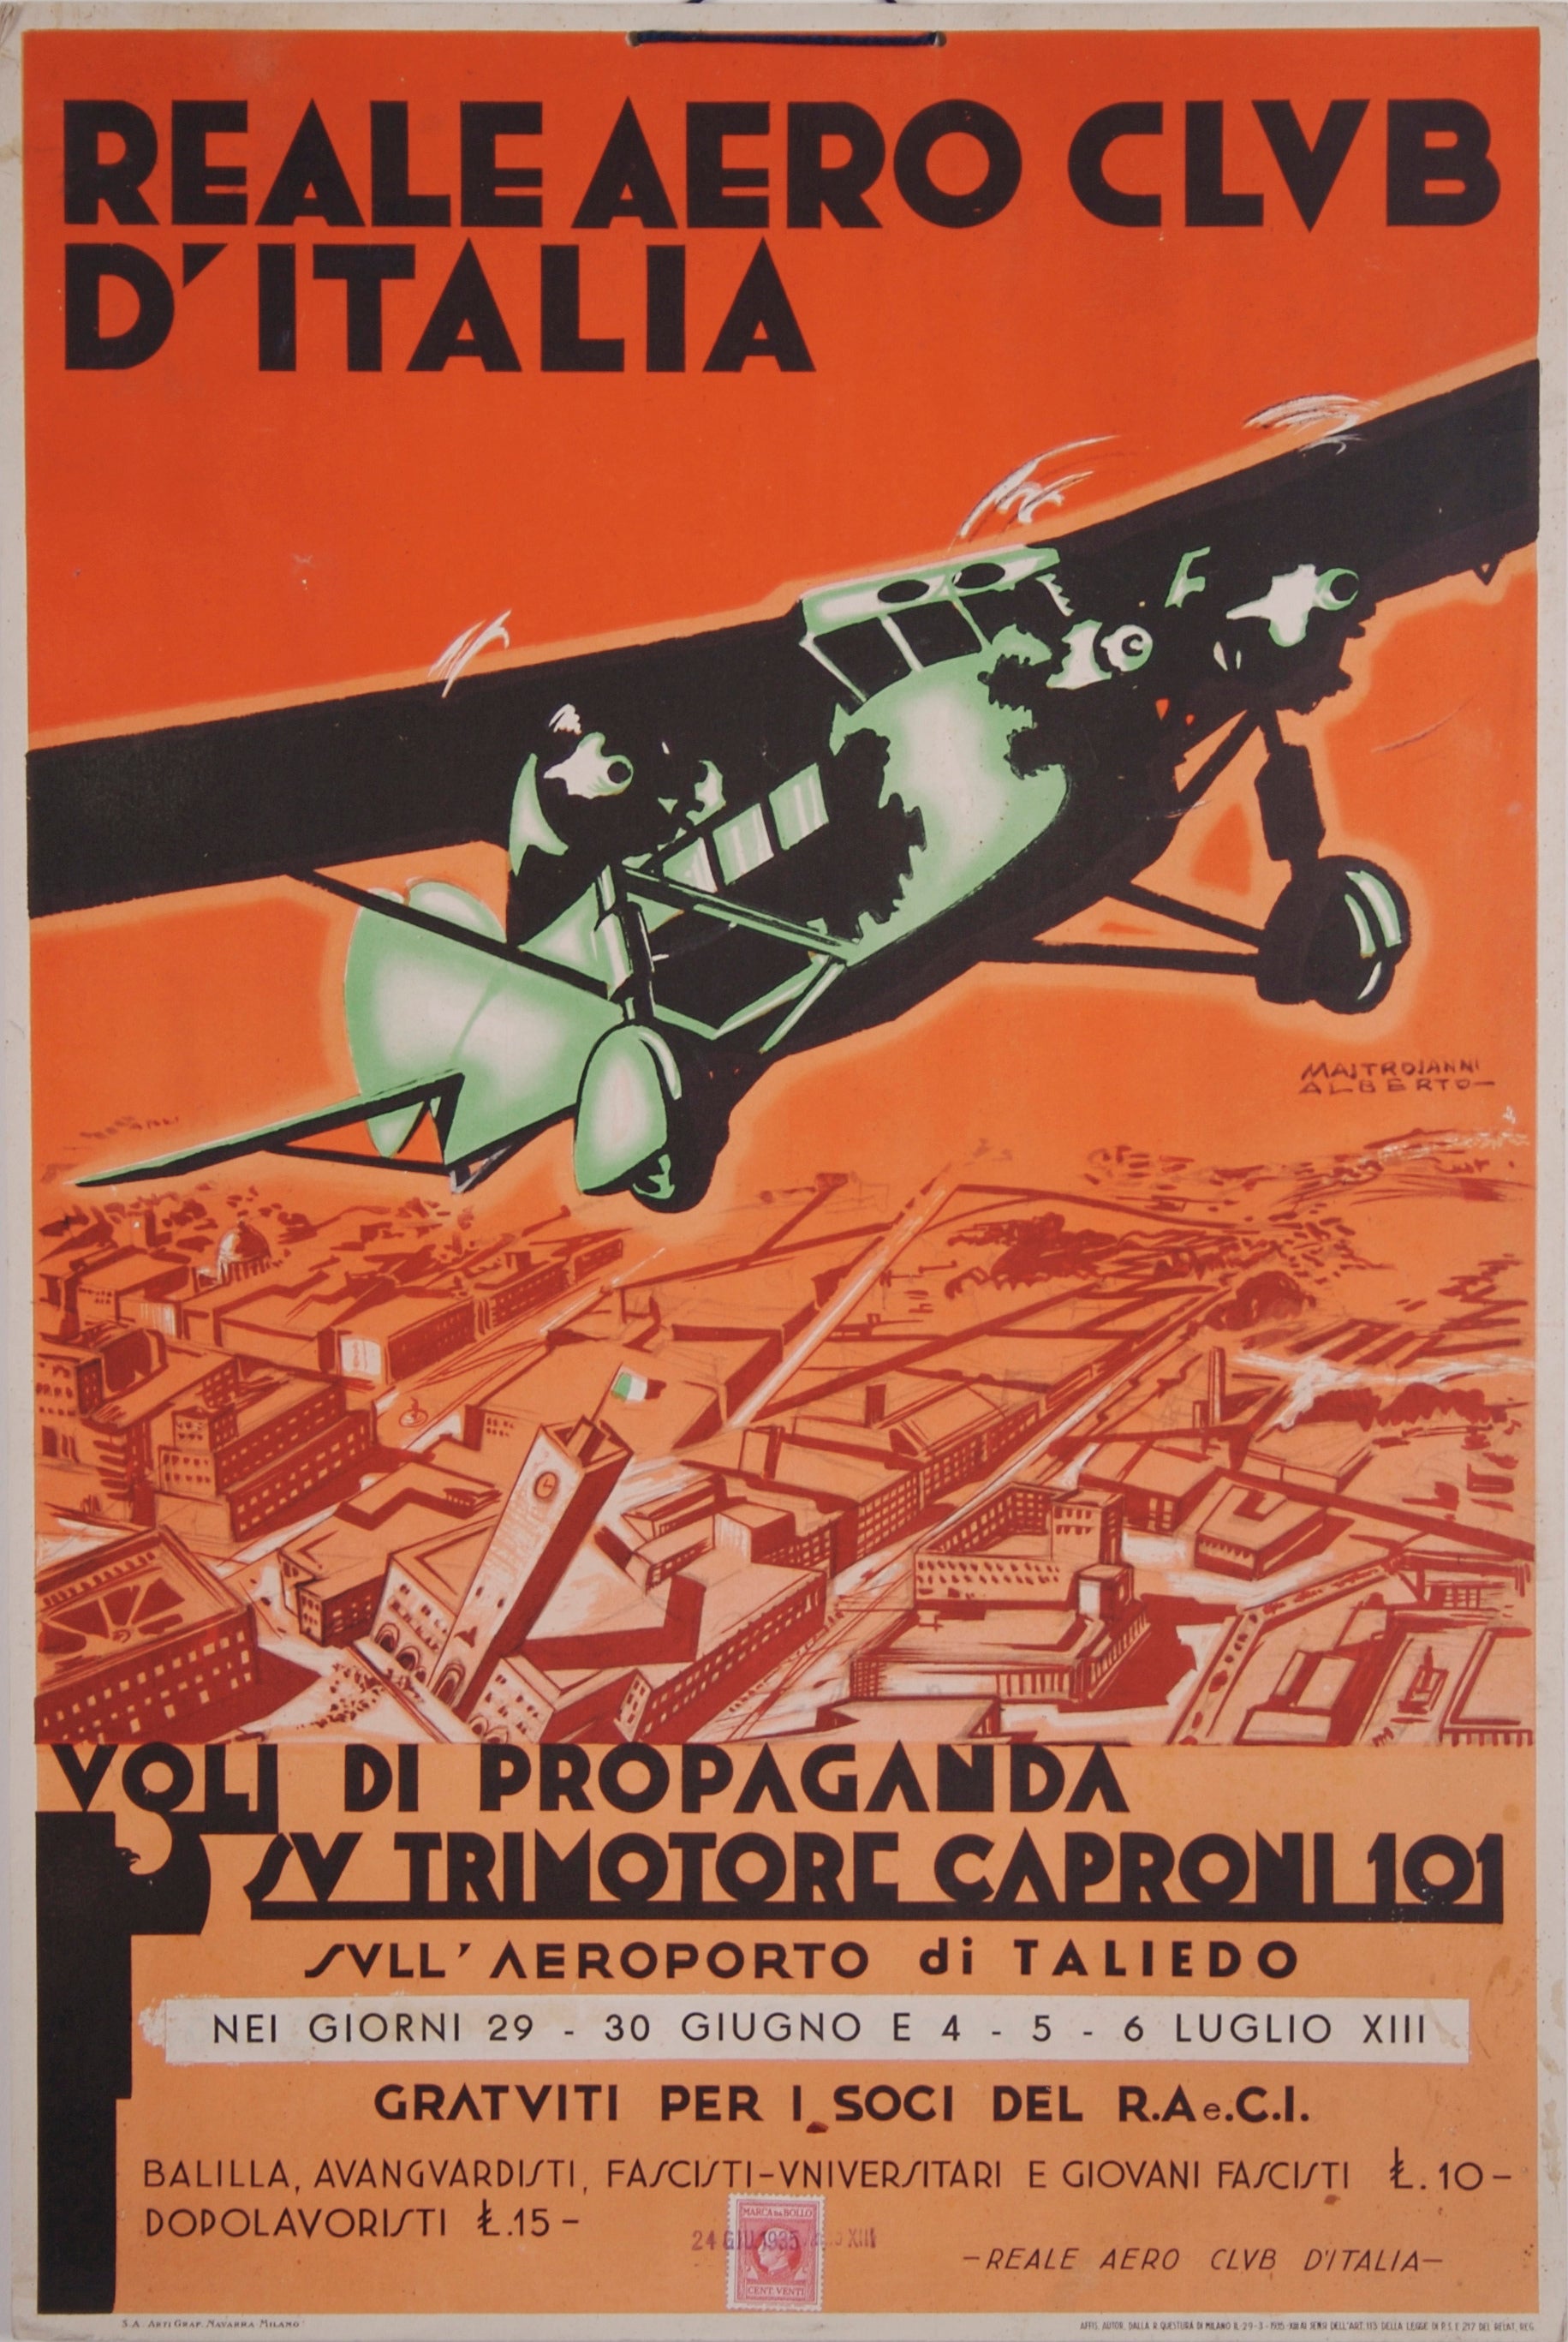 Italian Futurist Aviation Poster by Alberto Mastroianni, 1935